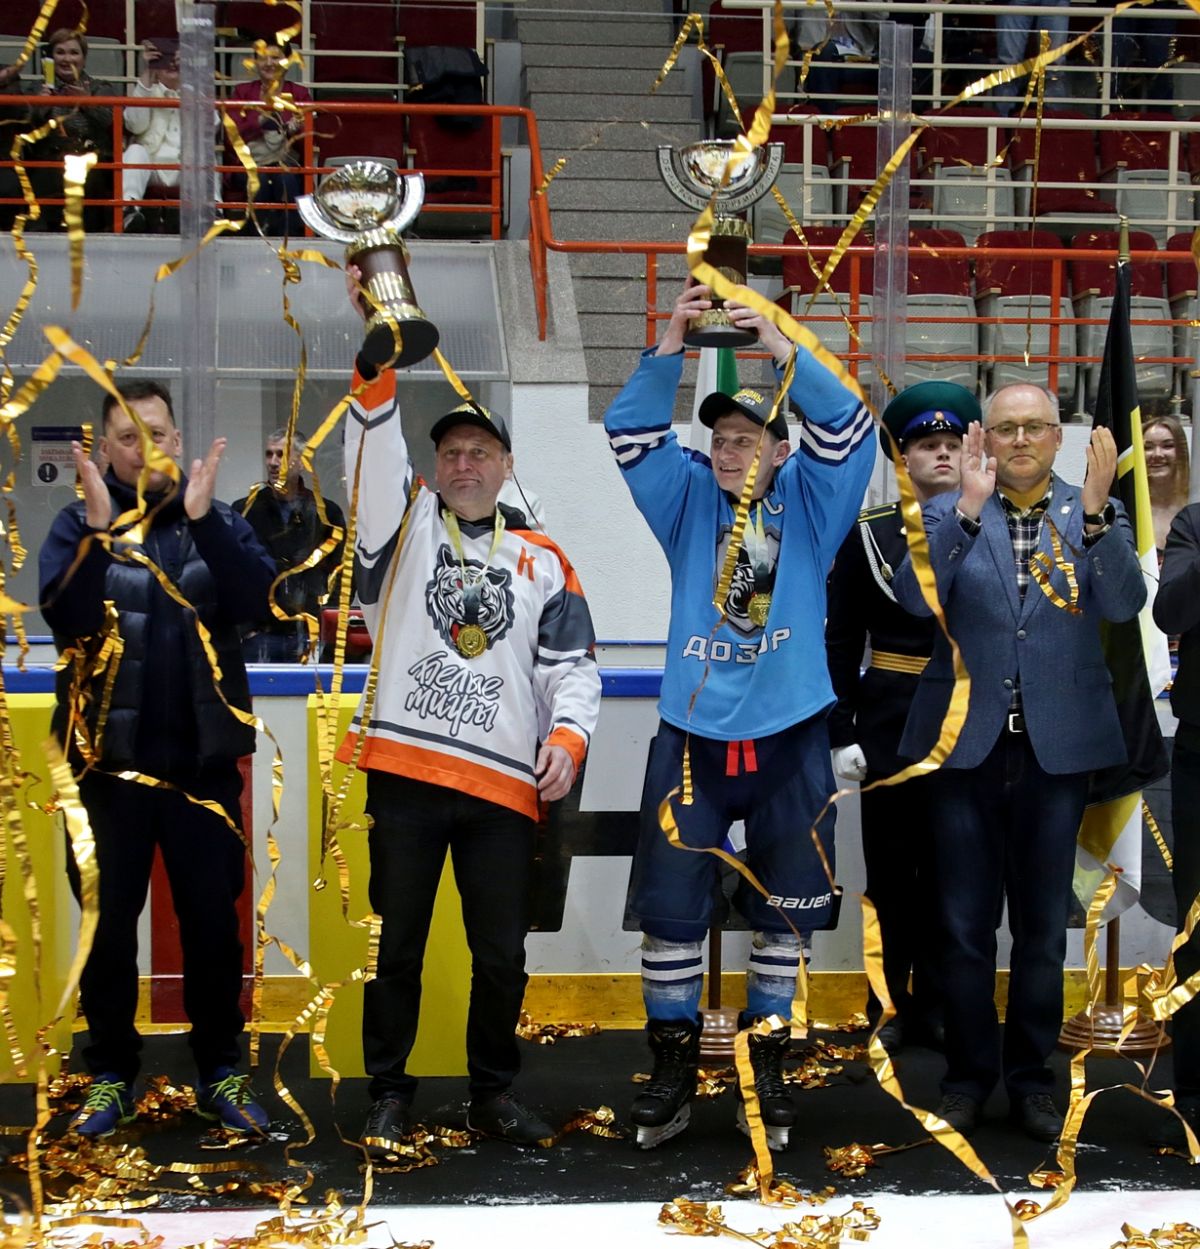 Известны чемпионы Офицерской Хоккейной Лиги регулярного чемпионата Хабаровска сезона 2022/2023!